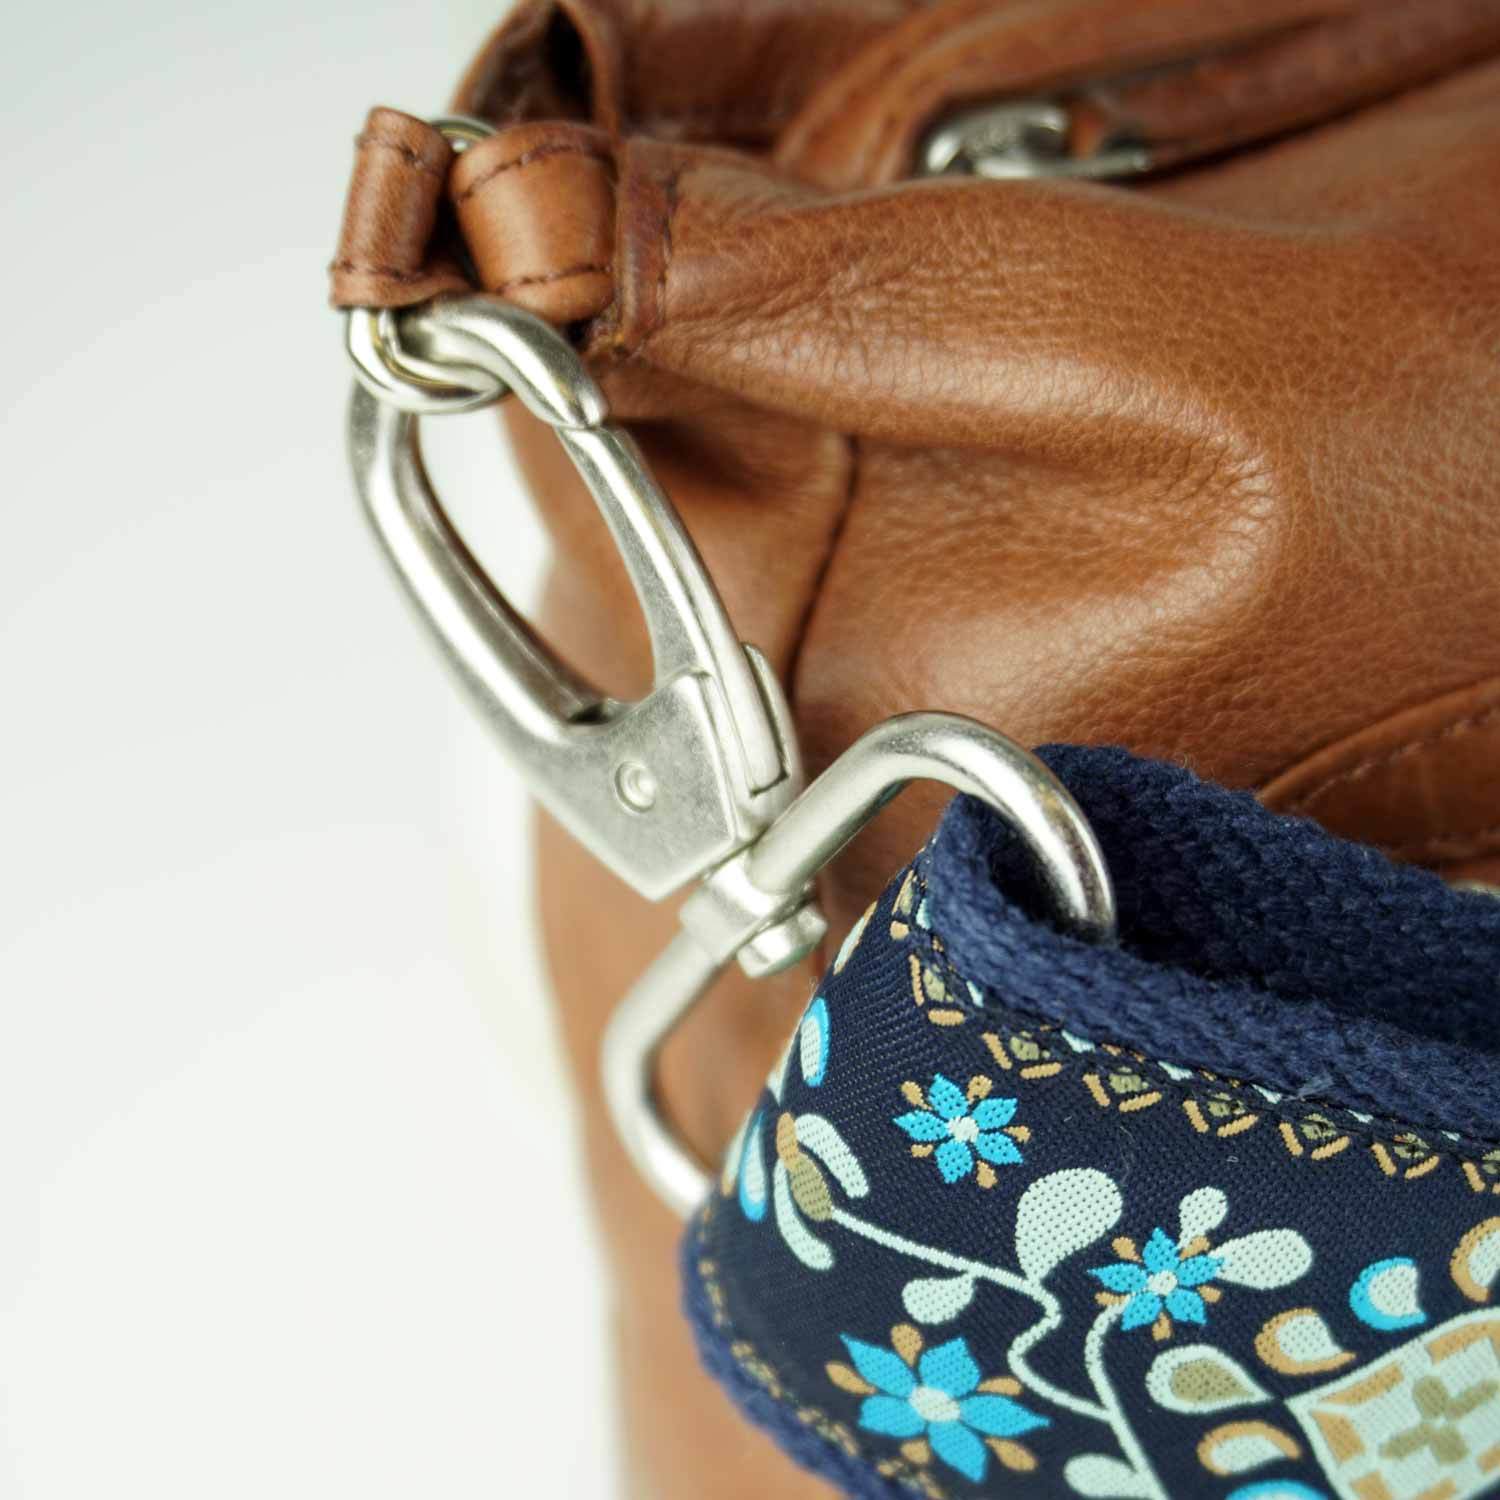 Bunter Taschengurt mit Karabiner in blauen Blumen an einer Tasche